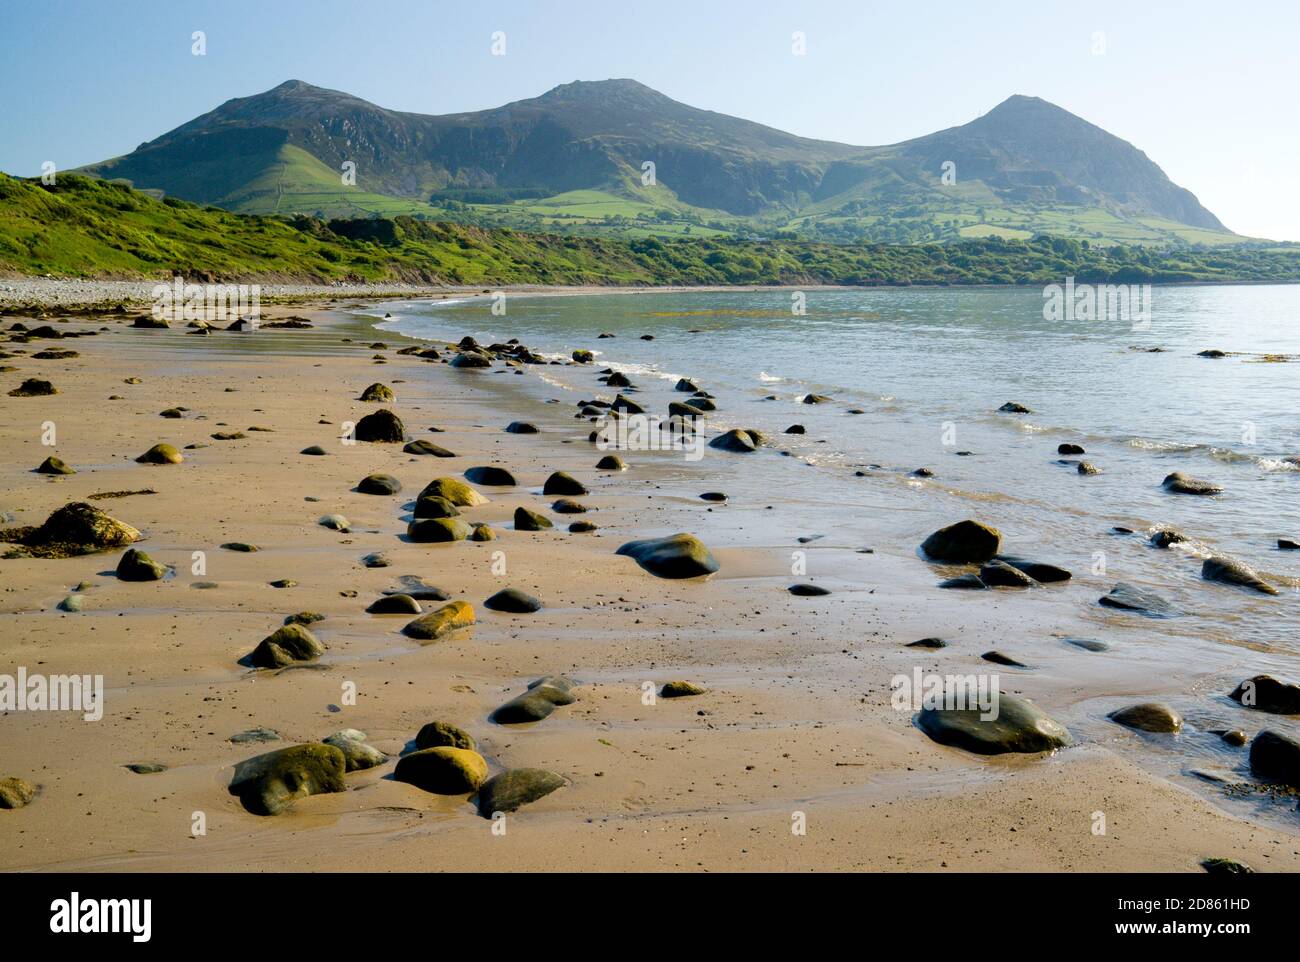 Yr Eifl Mountains (the rivals) from Tan Y Graig beach, Trefor, Lleyn peninsula, Gwynedd, North Wales. Stock Photo